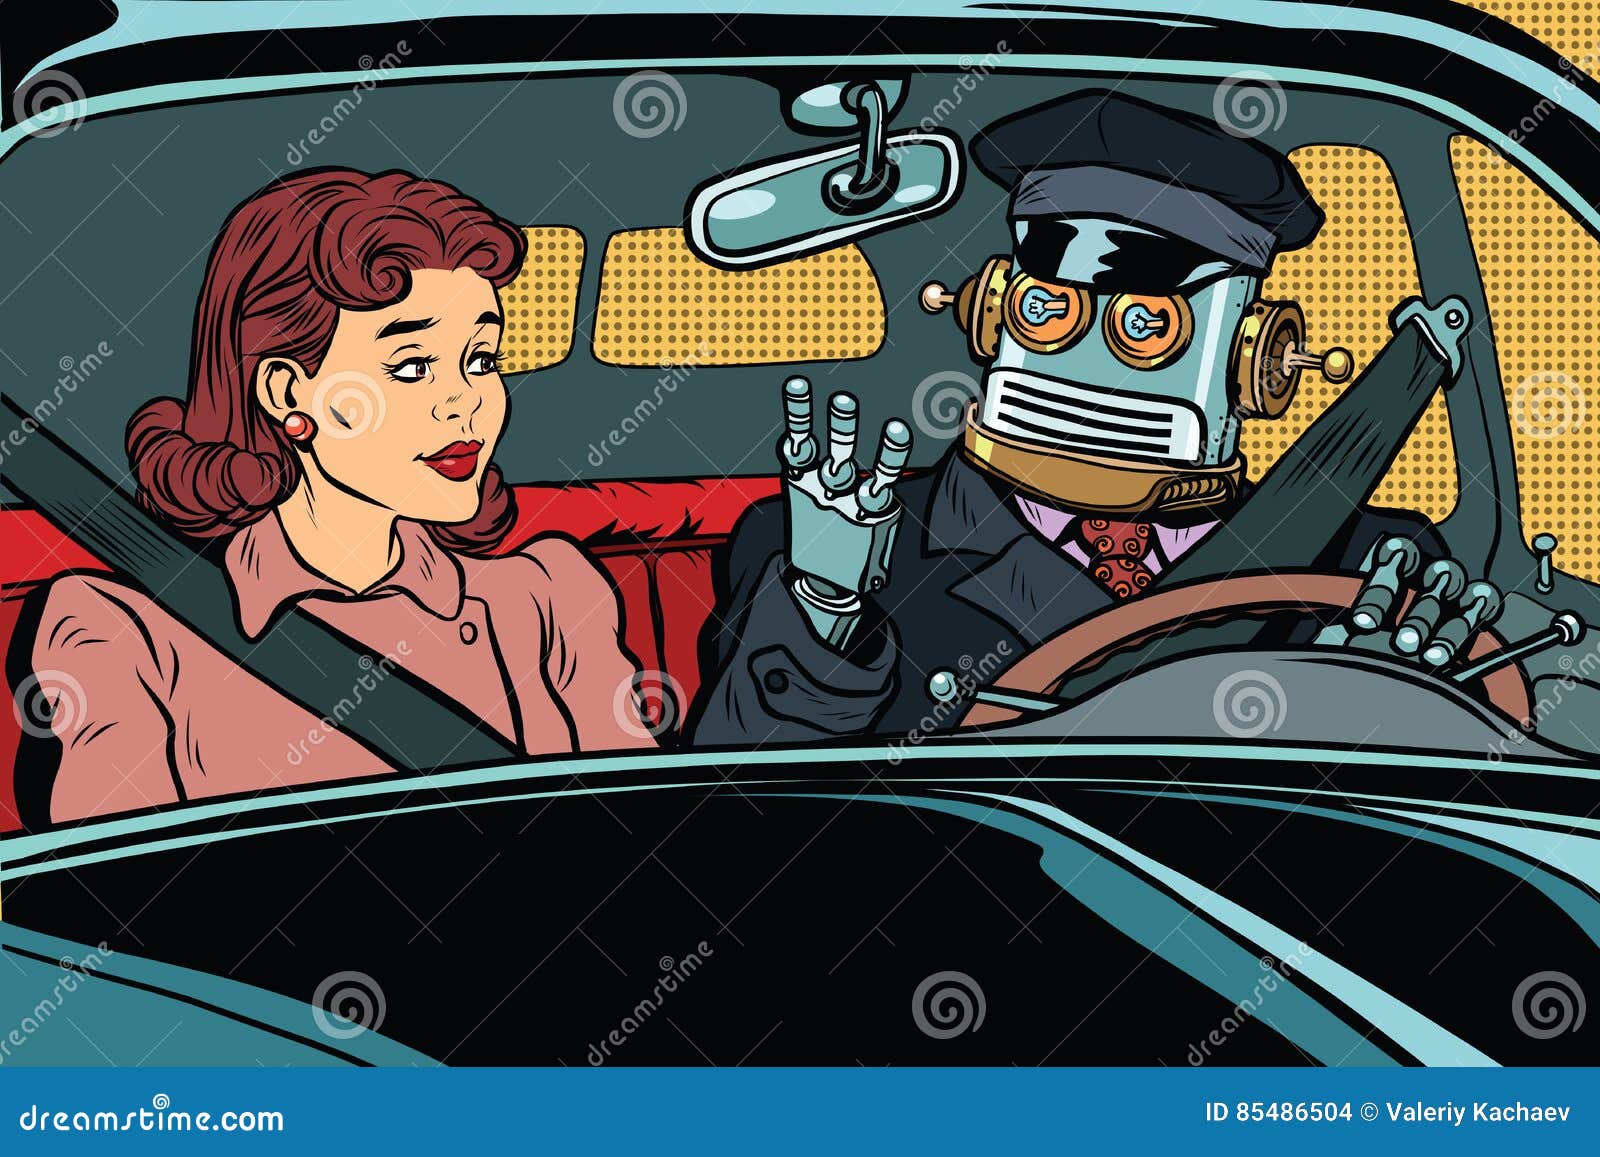 vintage retro robot autopilot car, woman passenger